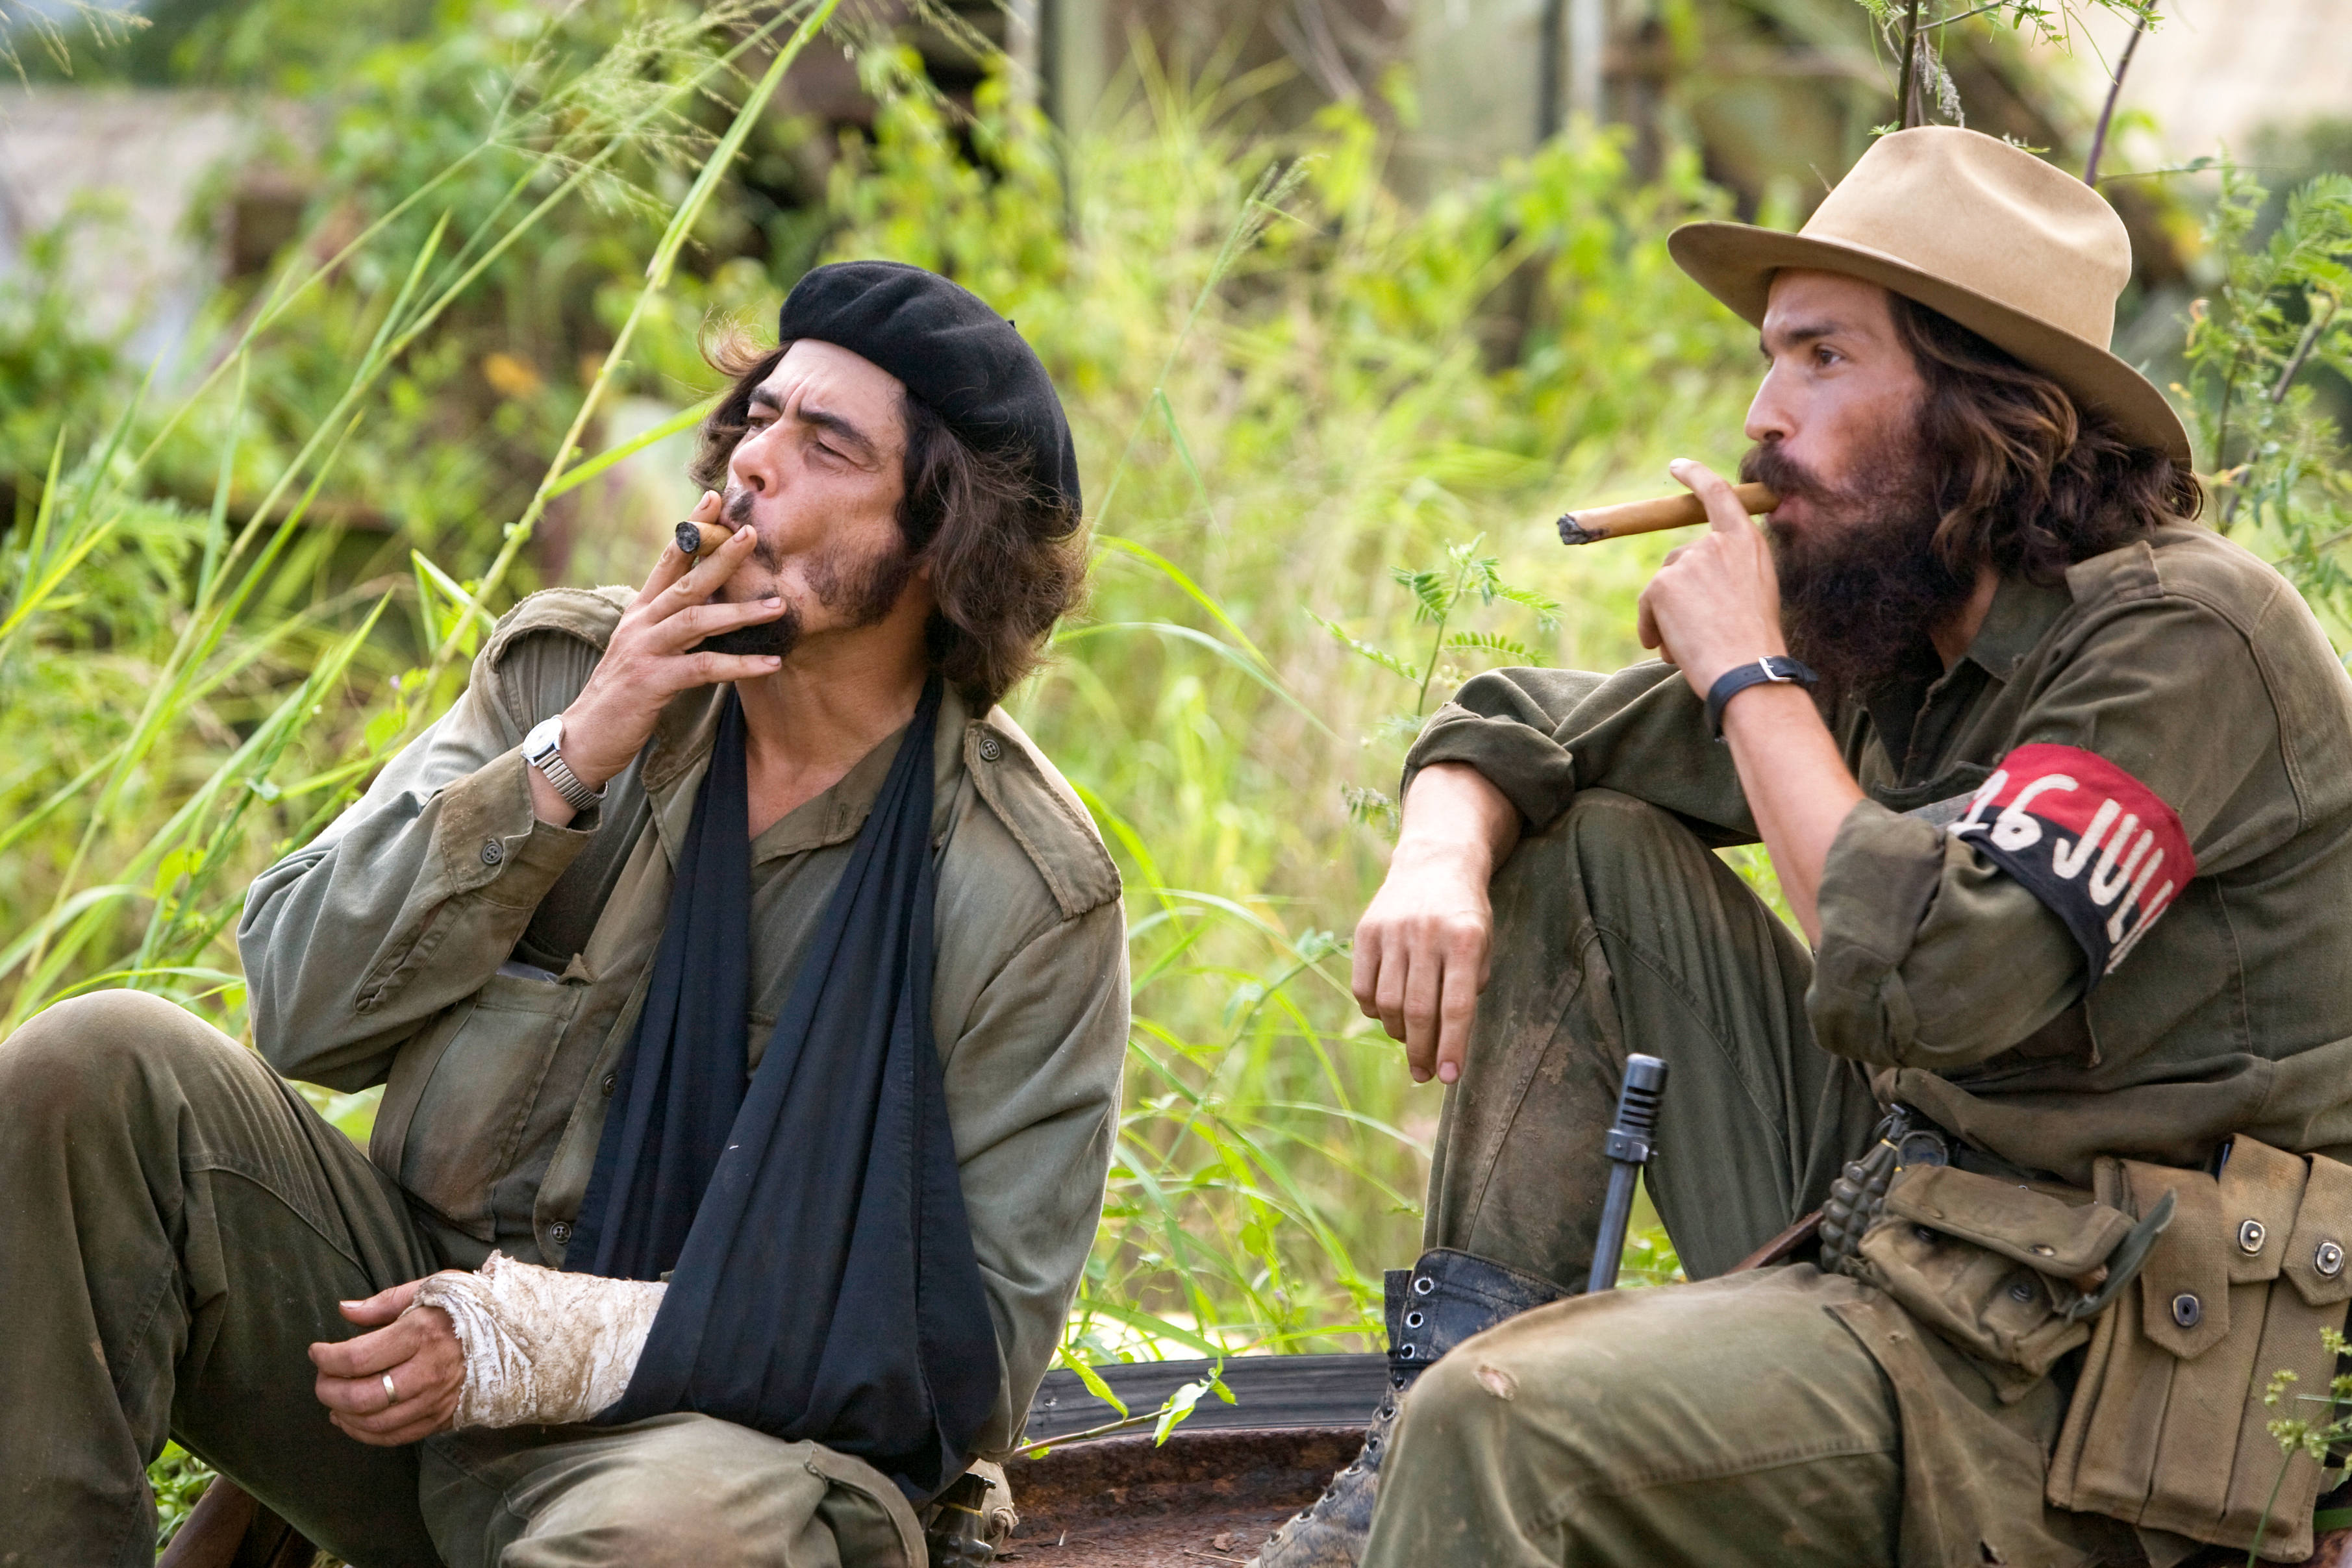 Rodrigo Santoro stars as Raul Castro and Benicio Del Toro stars as Che in IFC Films' The Argentine (2008)